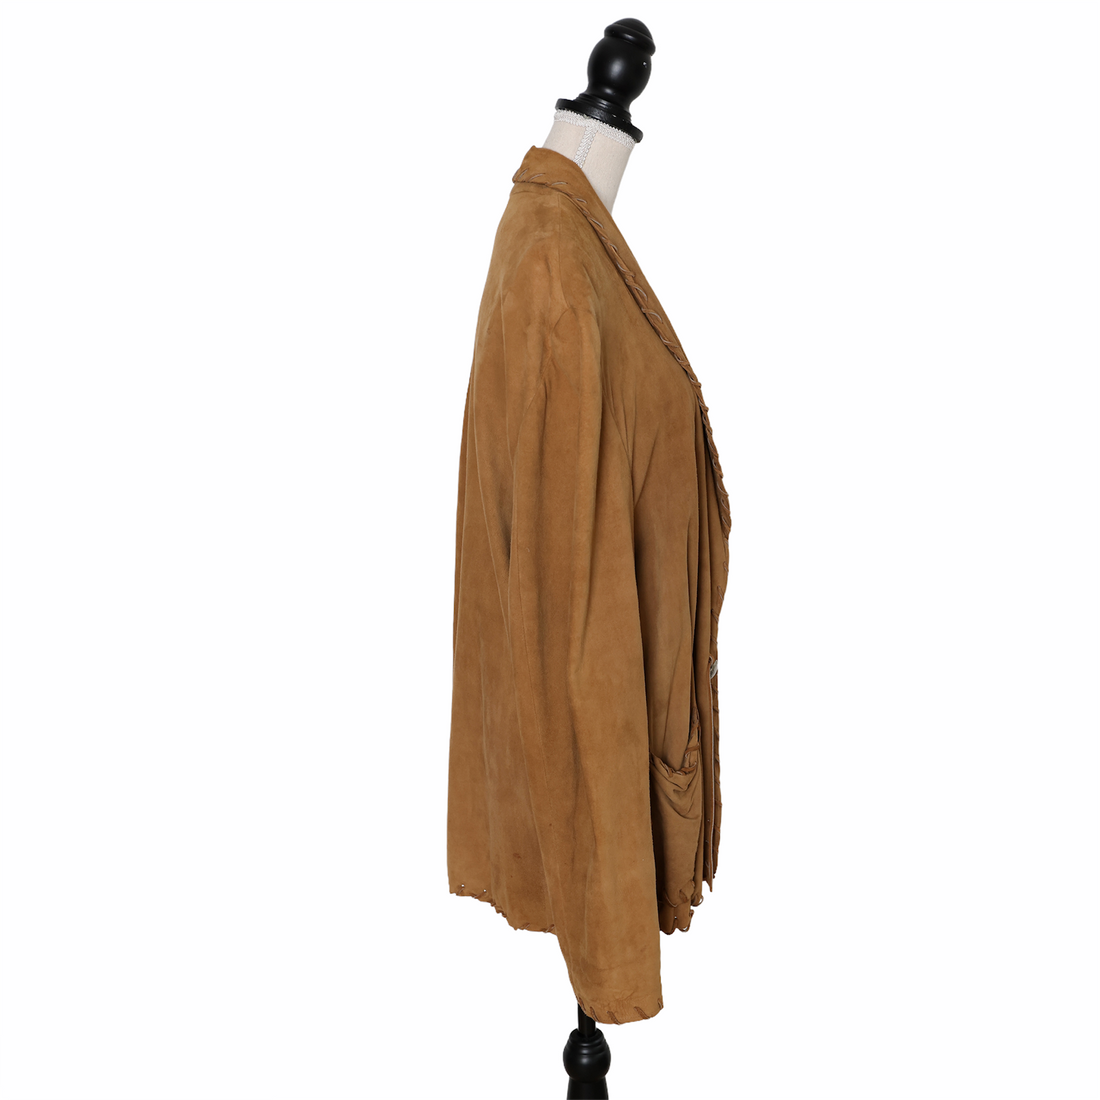 Ralph Lauren vintage suede jacket with fringe details